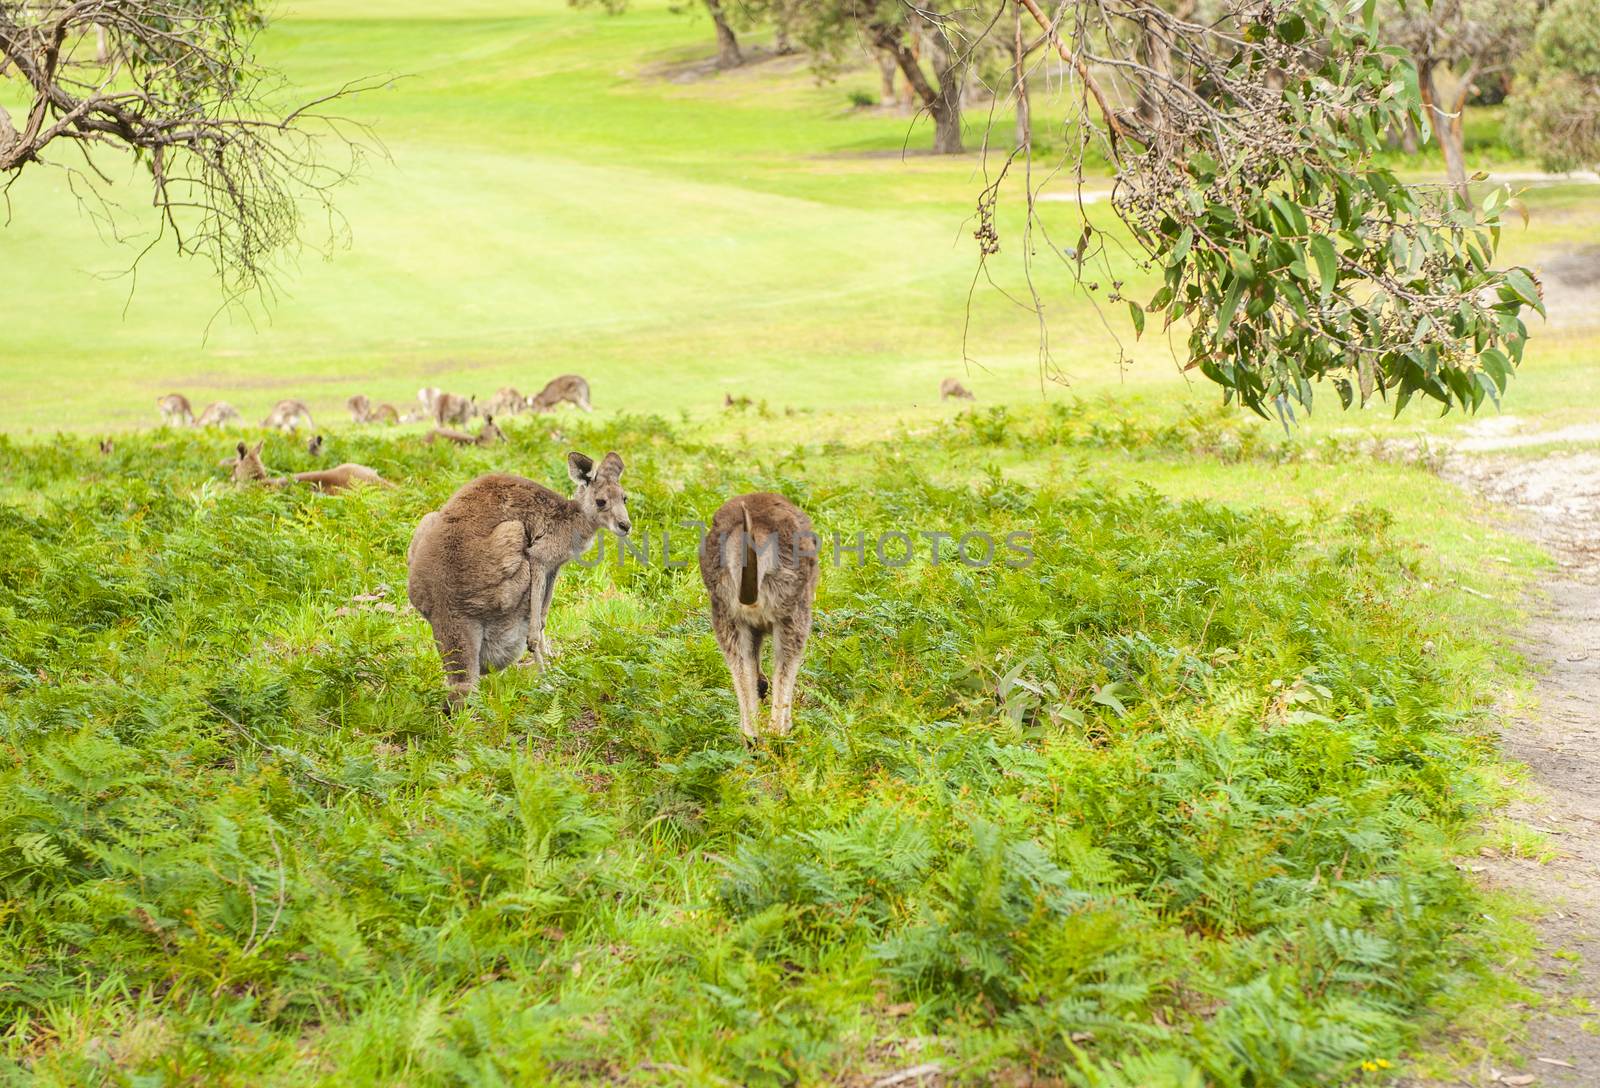 Kangaroos in Australia by fyletto